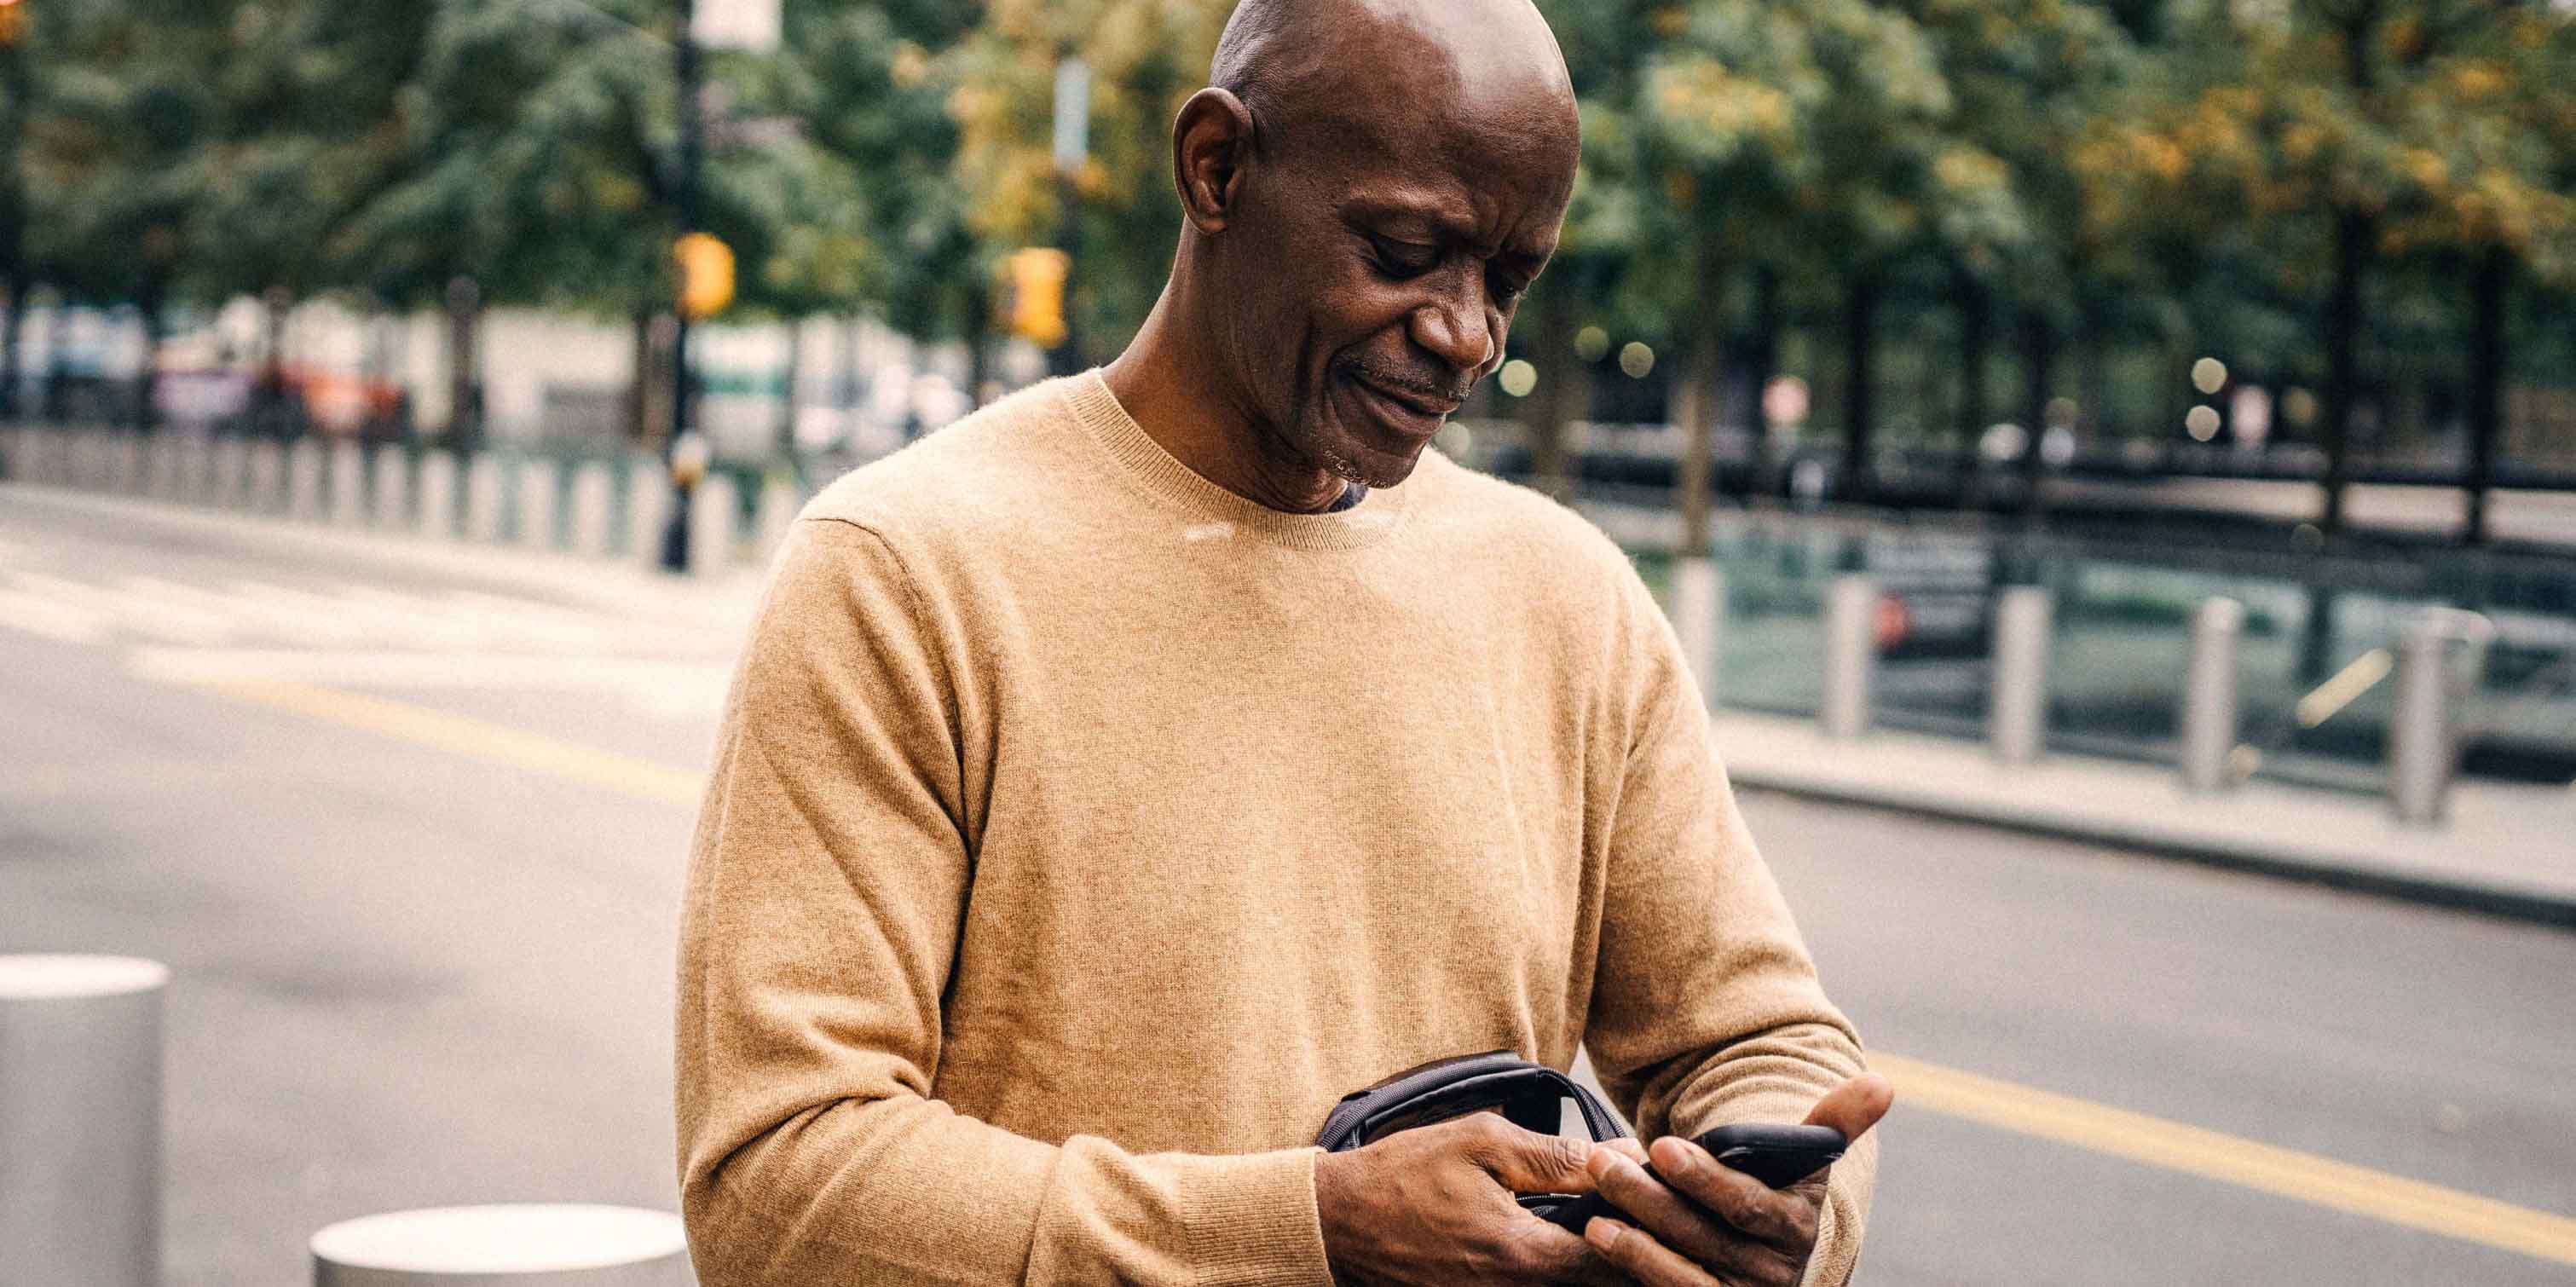 An elderly man walking down a street, holding a smartphone.